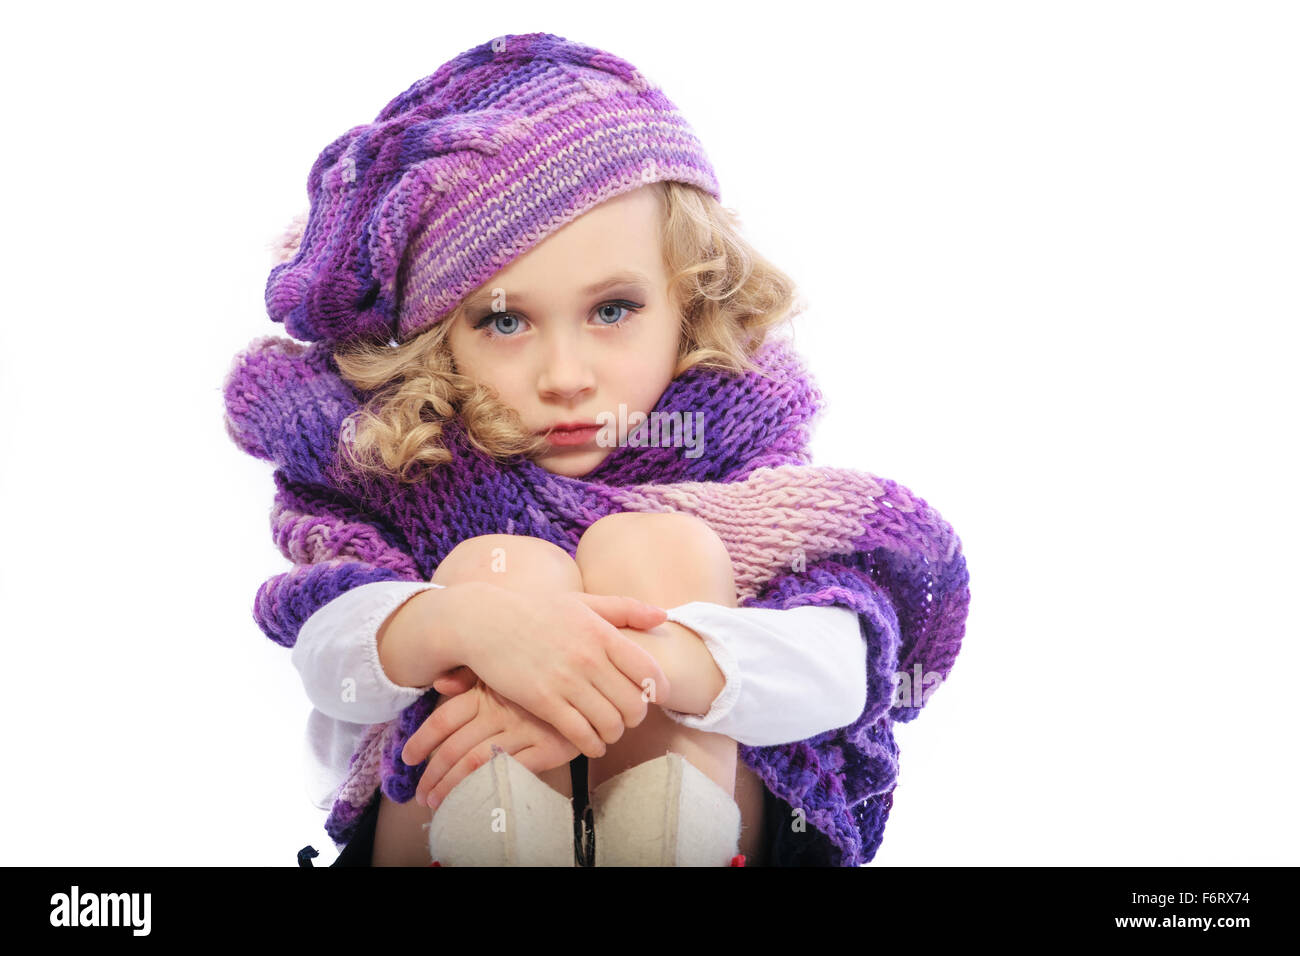 La jeune fille vêtue d'un violet vif foulard tricoté et hat.Elle a peint les lèvres et les yeux,comme la fille adultes.Il est triste et rire Banque D'Images